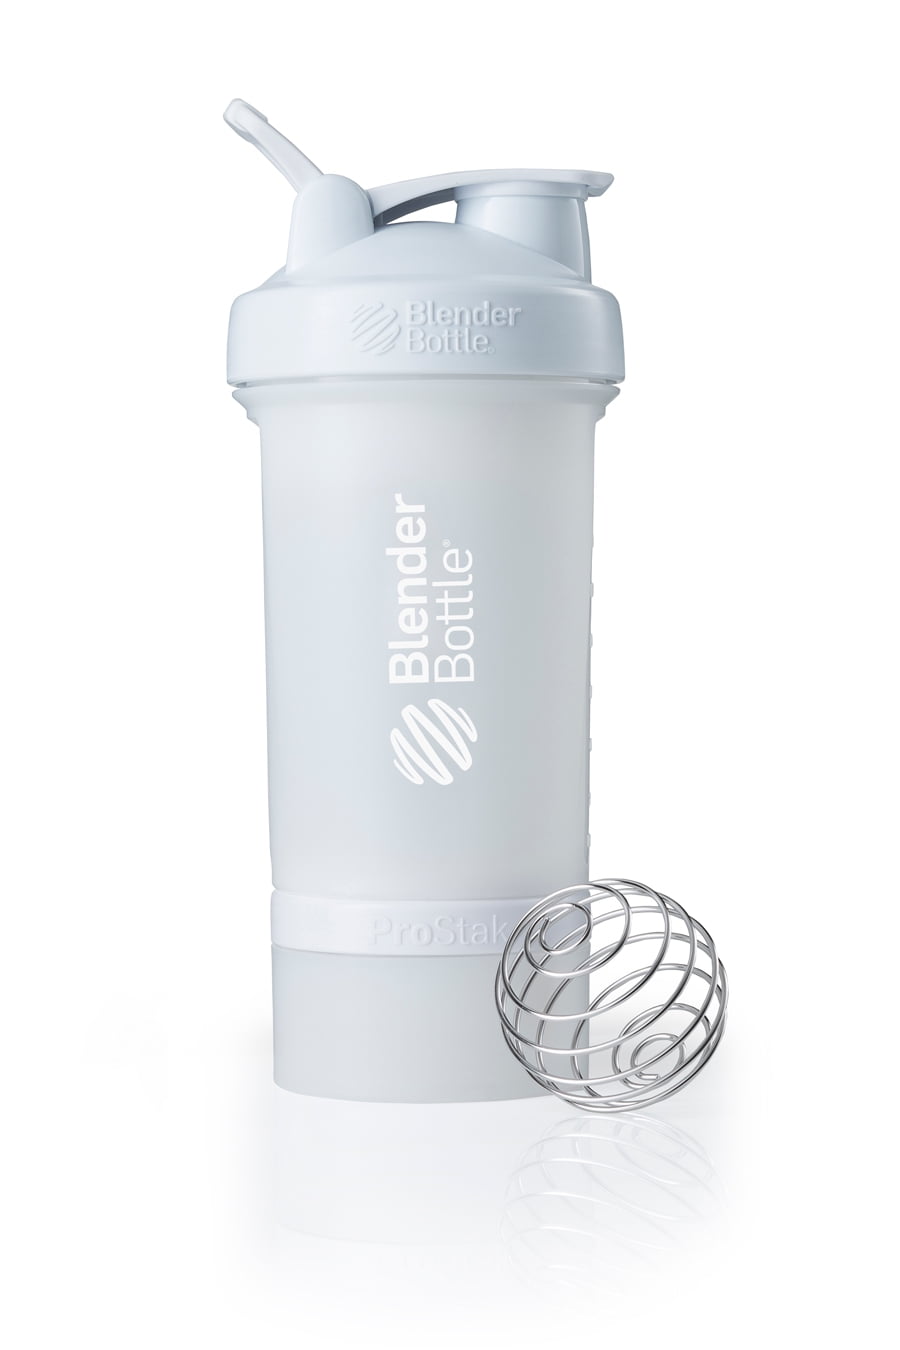 Blender Bottle ProStak with Steel Blender Ball 22oz -- VitaGlo